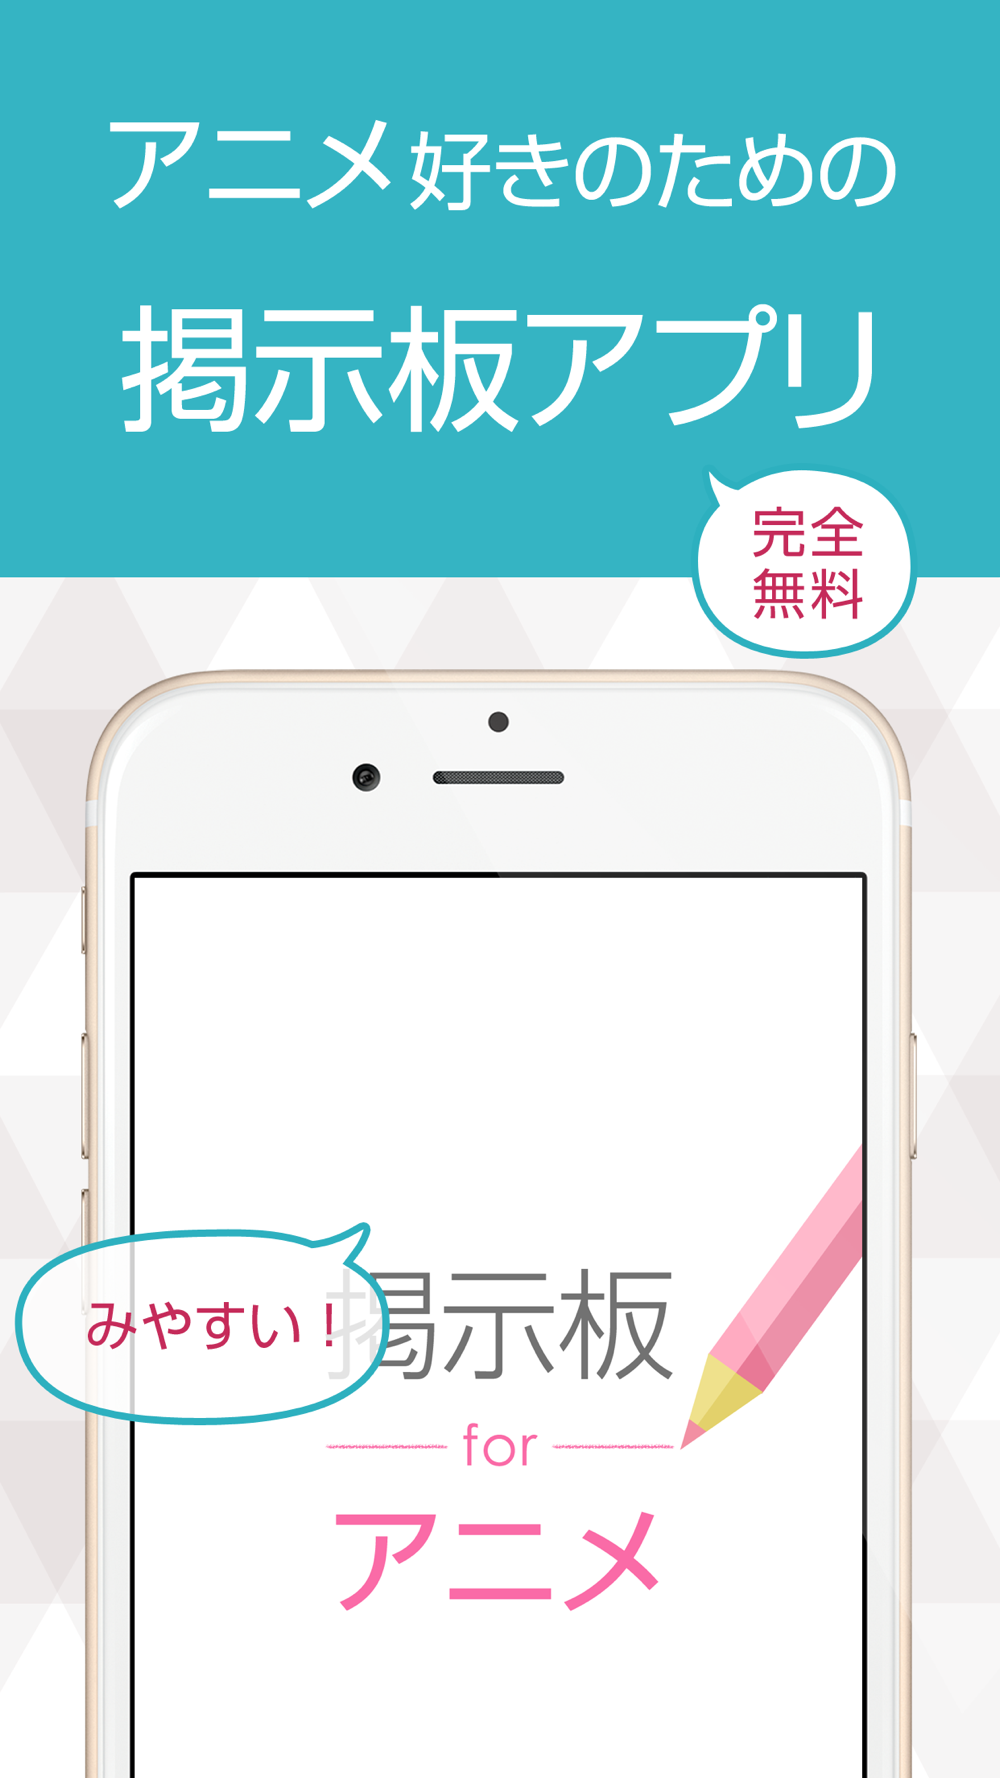 アニメの情報交換掲示板 Free Download App For Iphone Steprimo Com